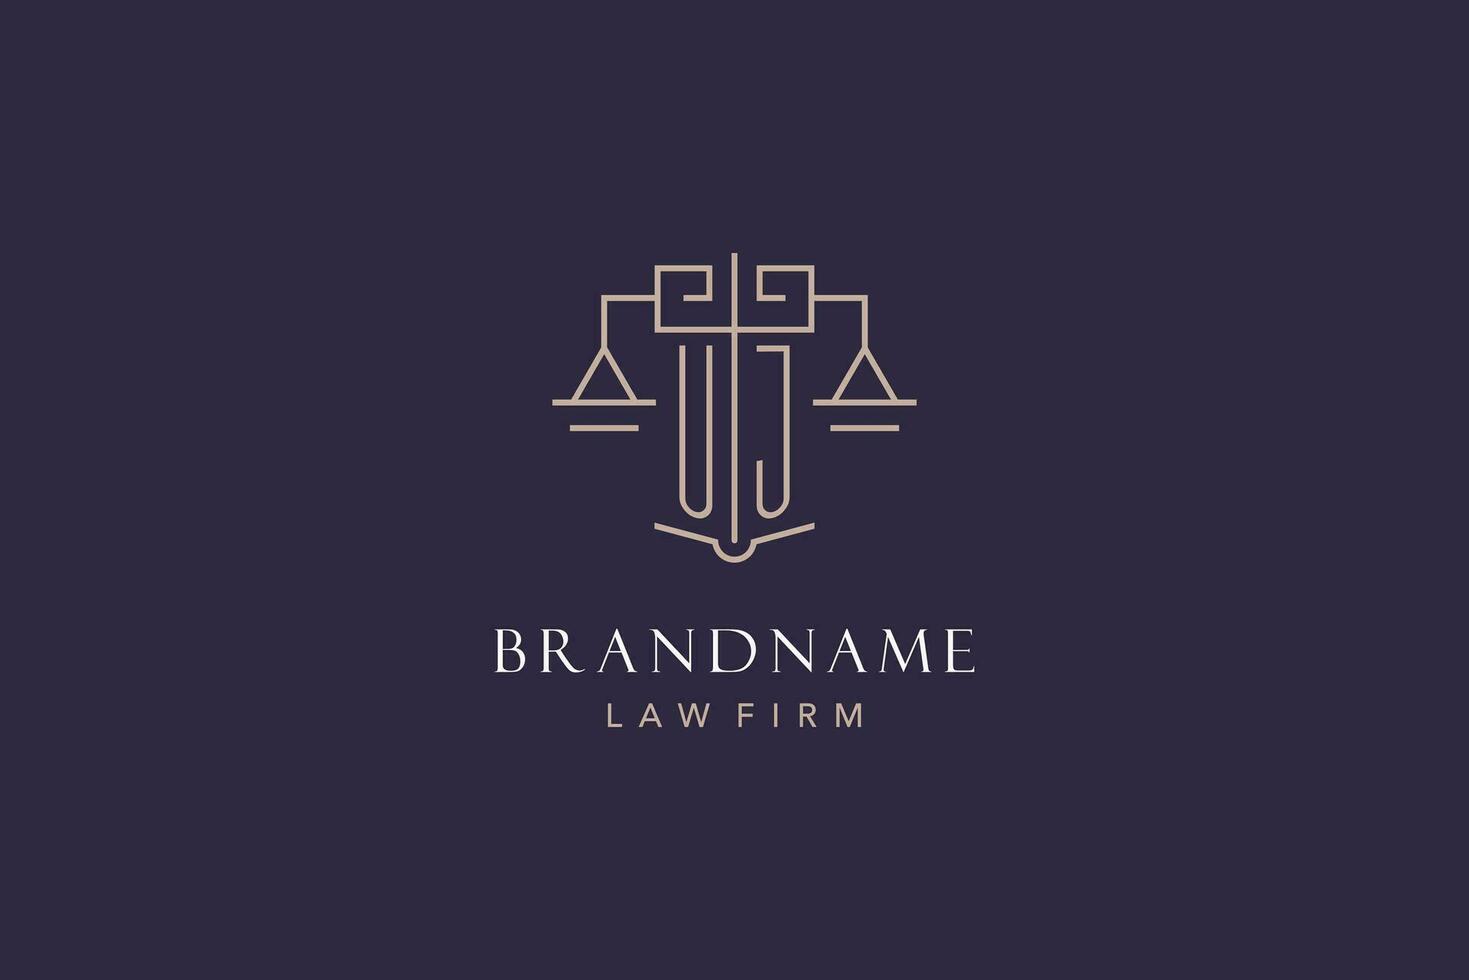 eerste brief uj logo met schaal van gerechtigheid logo ontwerp, luxe wettelijk logo meetkundig stijl vector